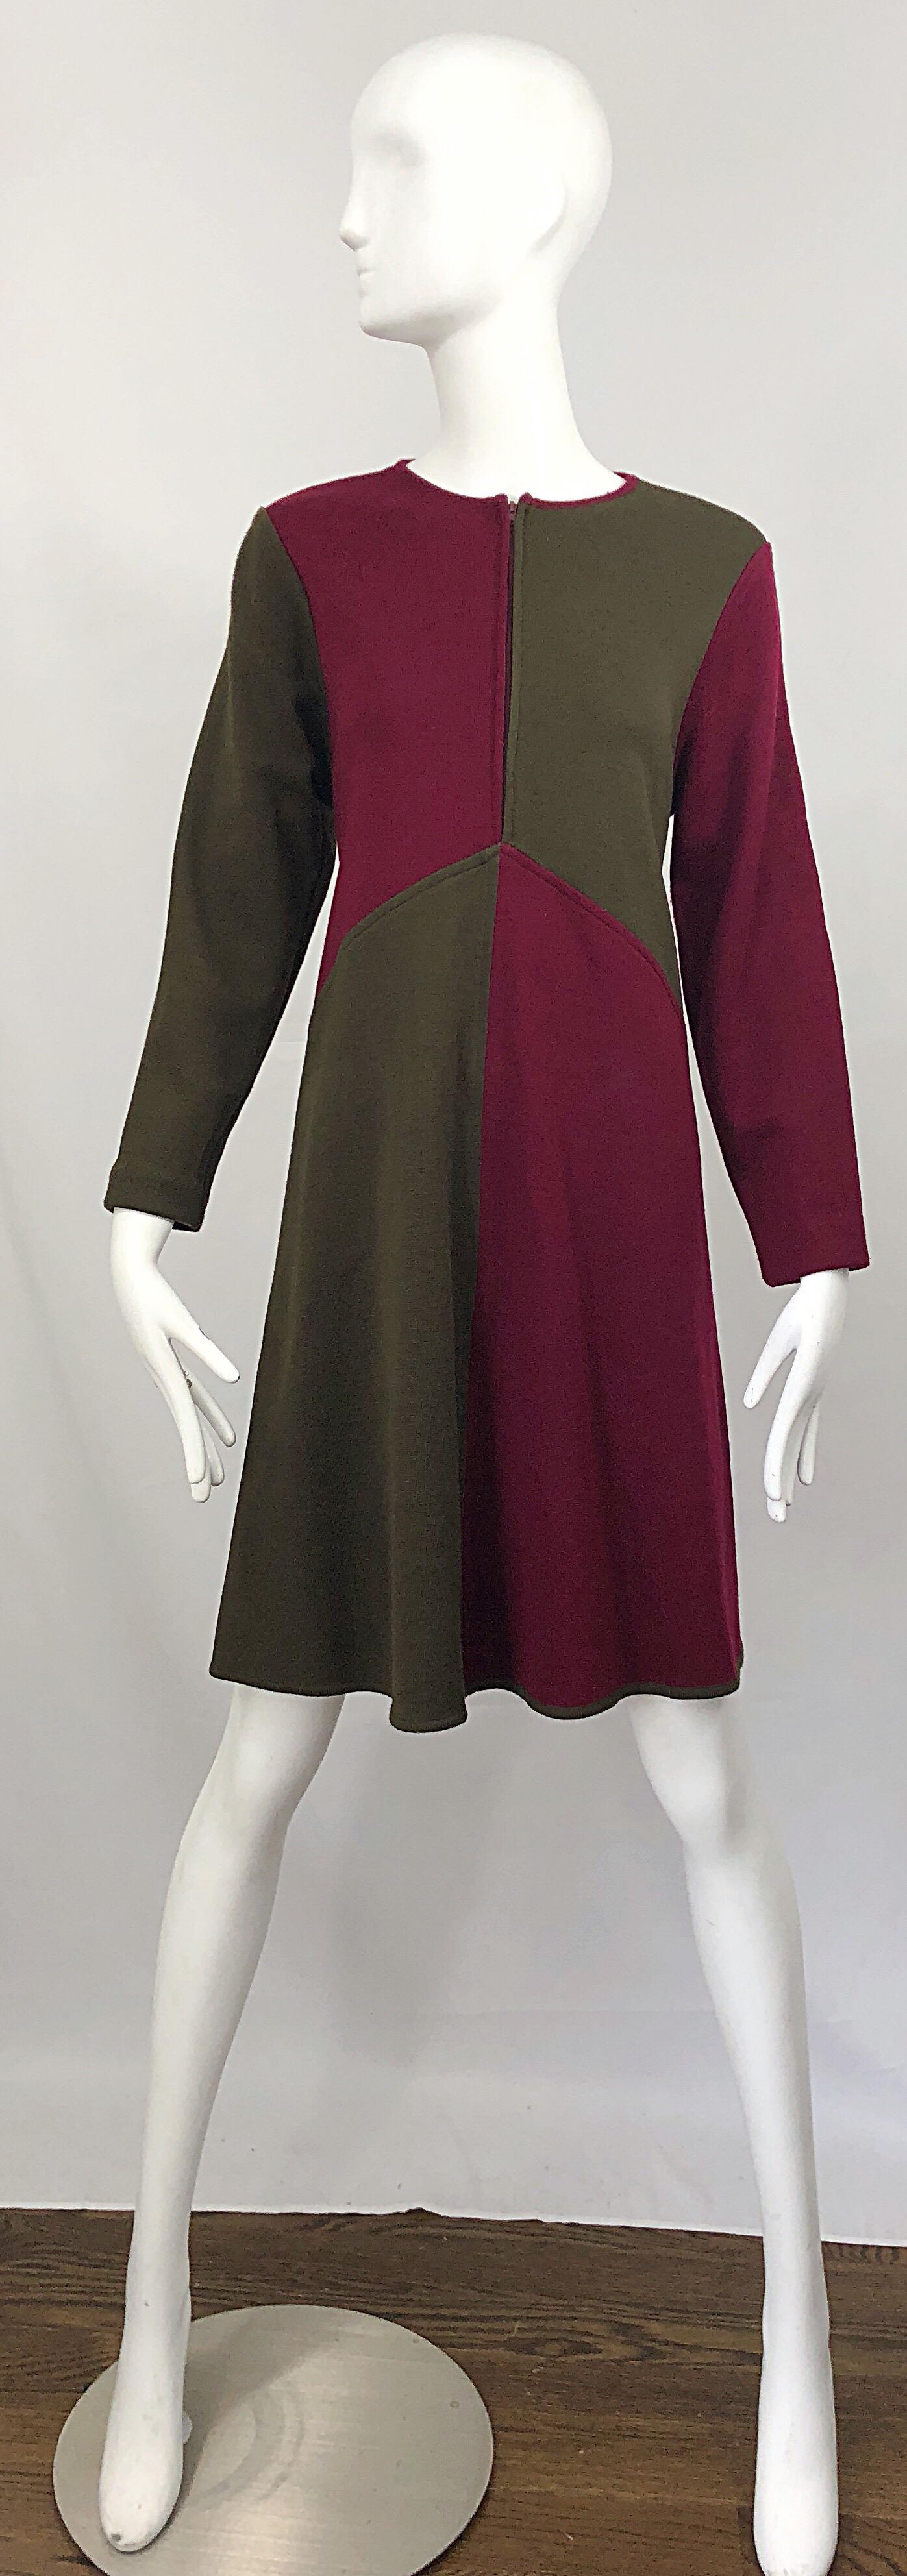 Vintage HARVE BENARD 1960s Style Maroon Burgundy + Brown Knit Wool Swing Dress 4